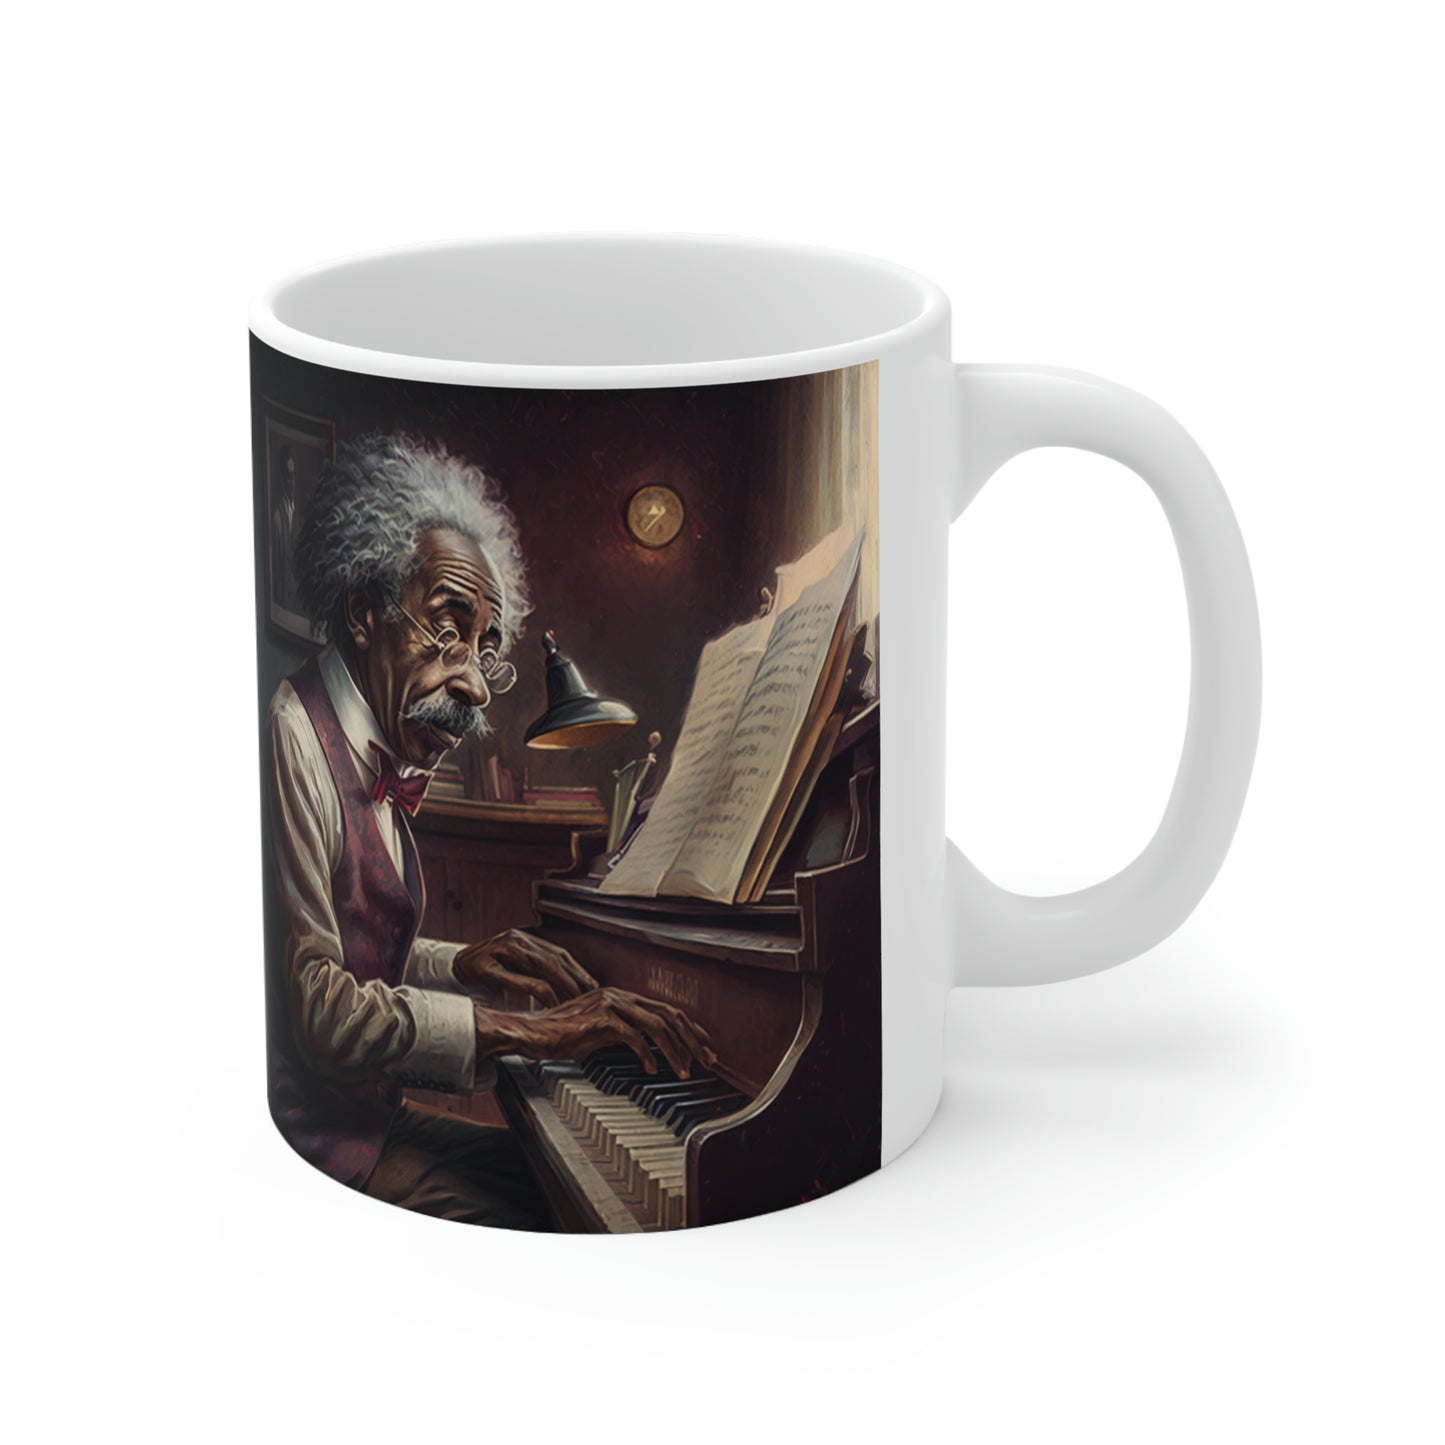 Musical Equation - Ceramic Mug 11oz